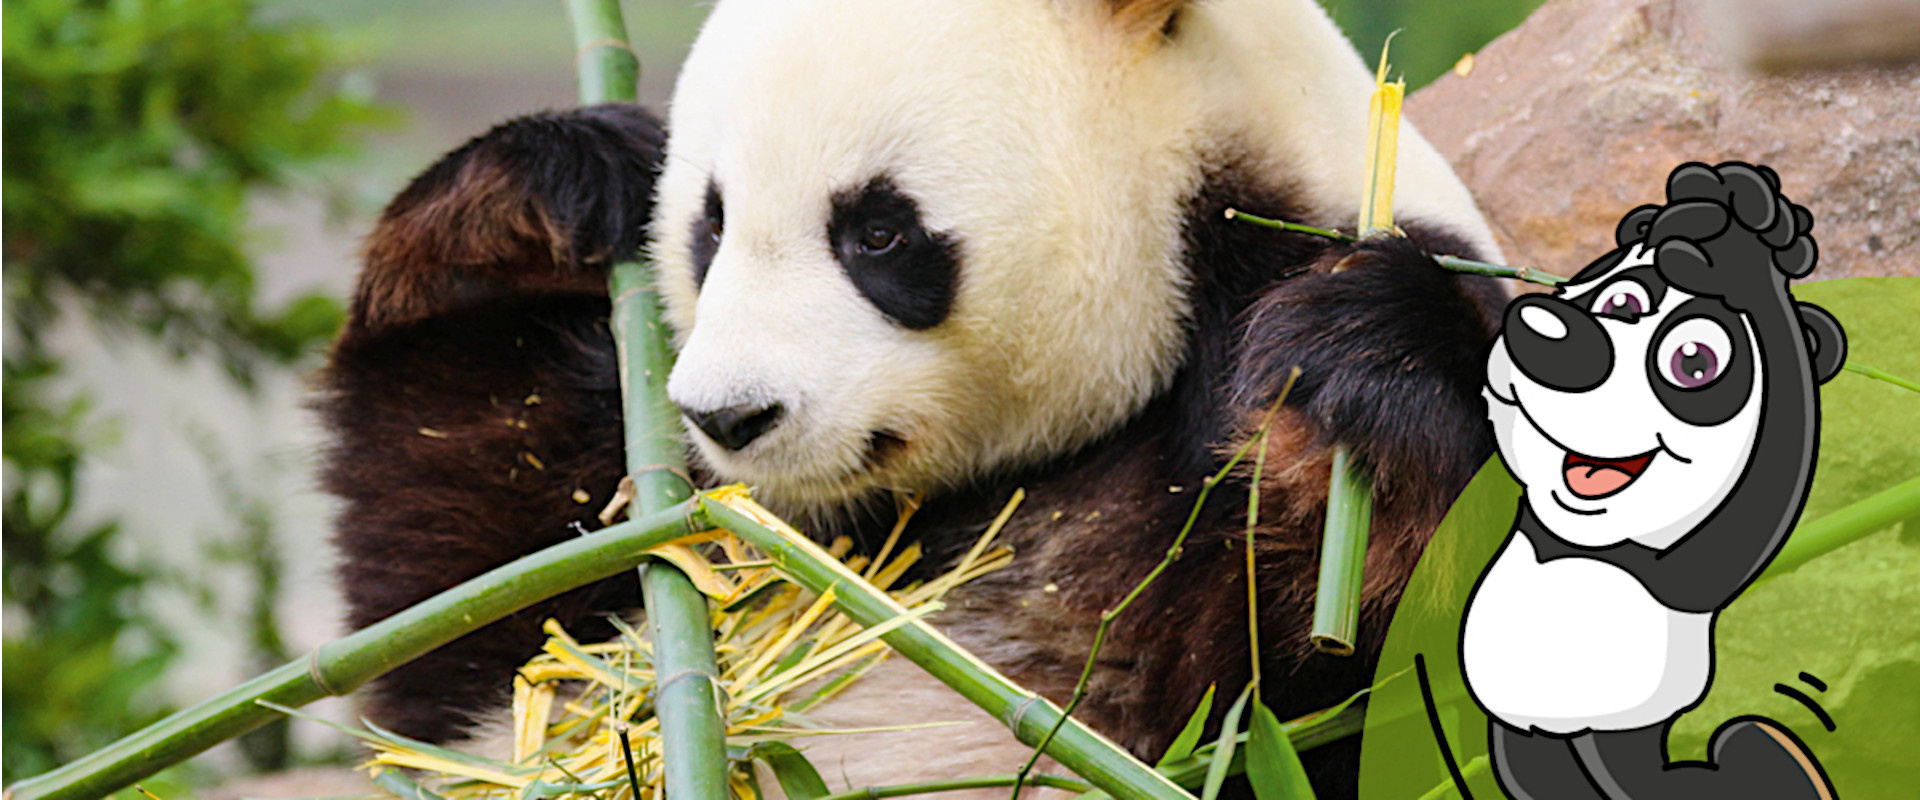 Panda mit Bambus